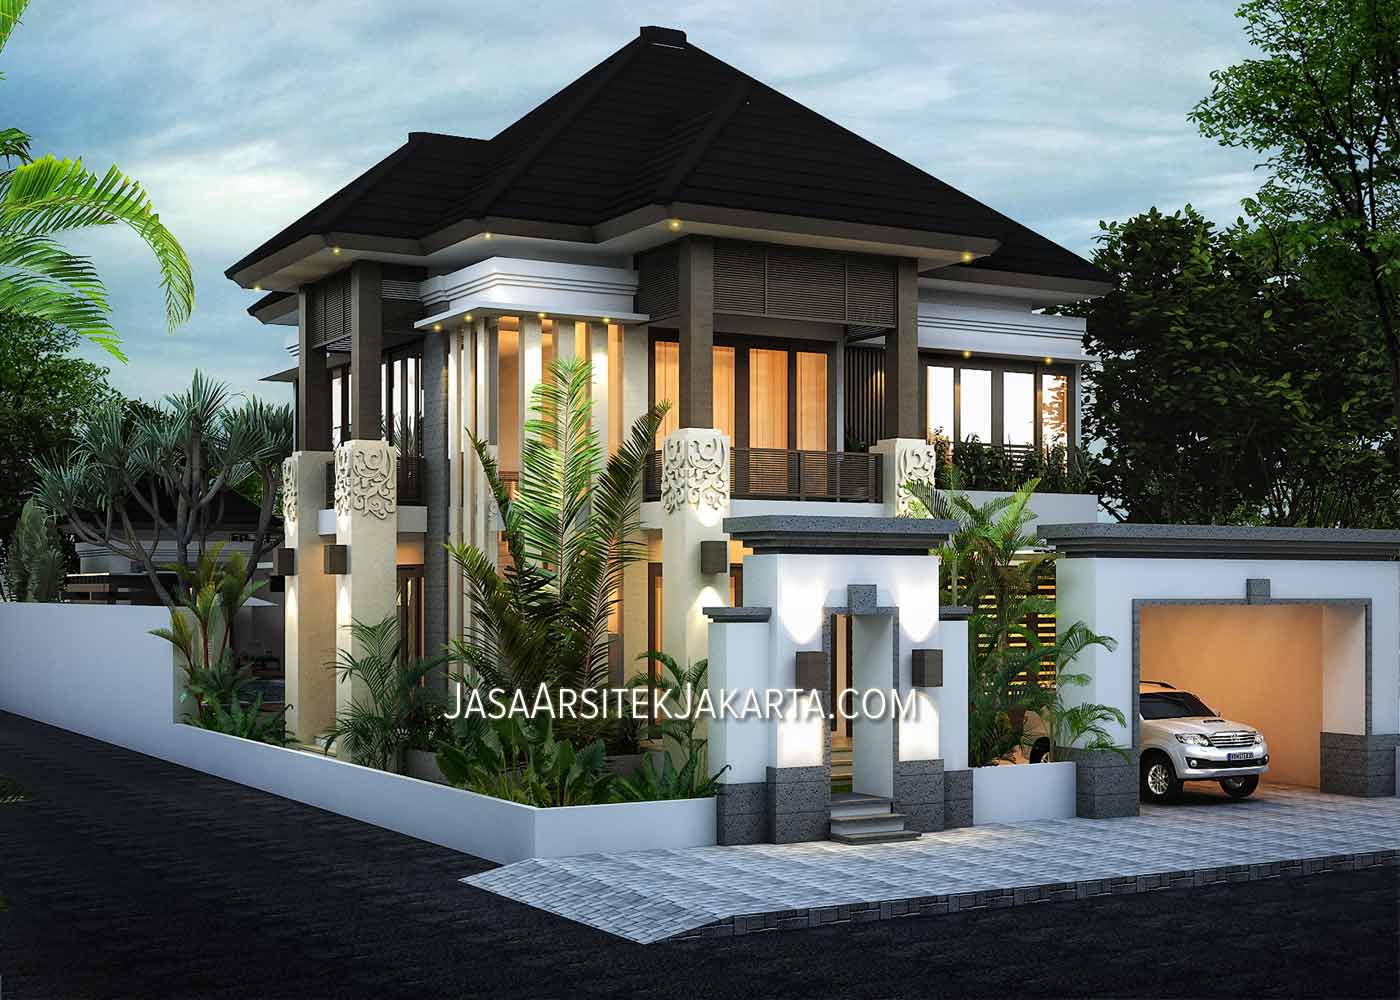 52 Kumpulan Desain Rumah Minimalis 2 Lantai Gaya Bali Paling Populer Di Dunia Deagam Design